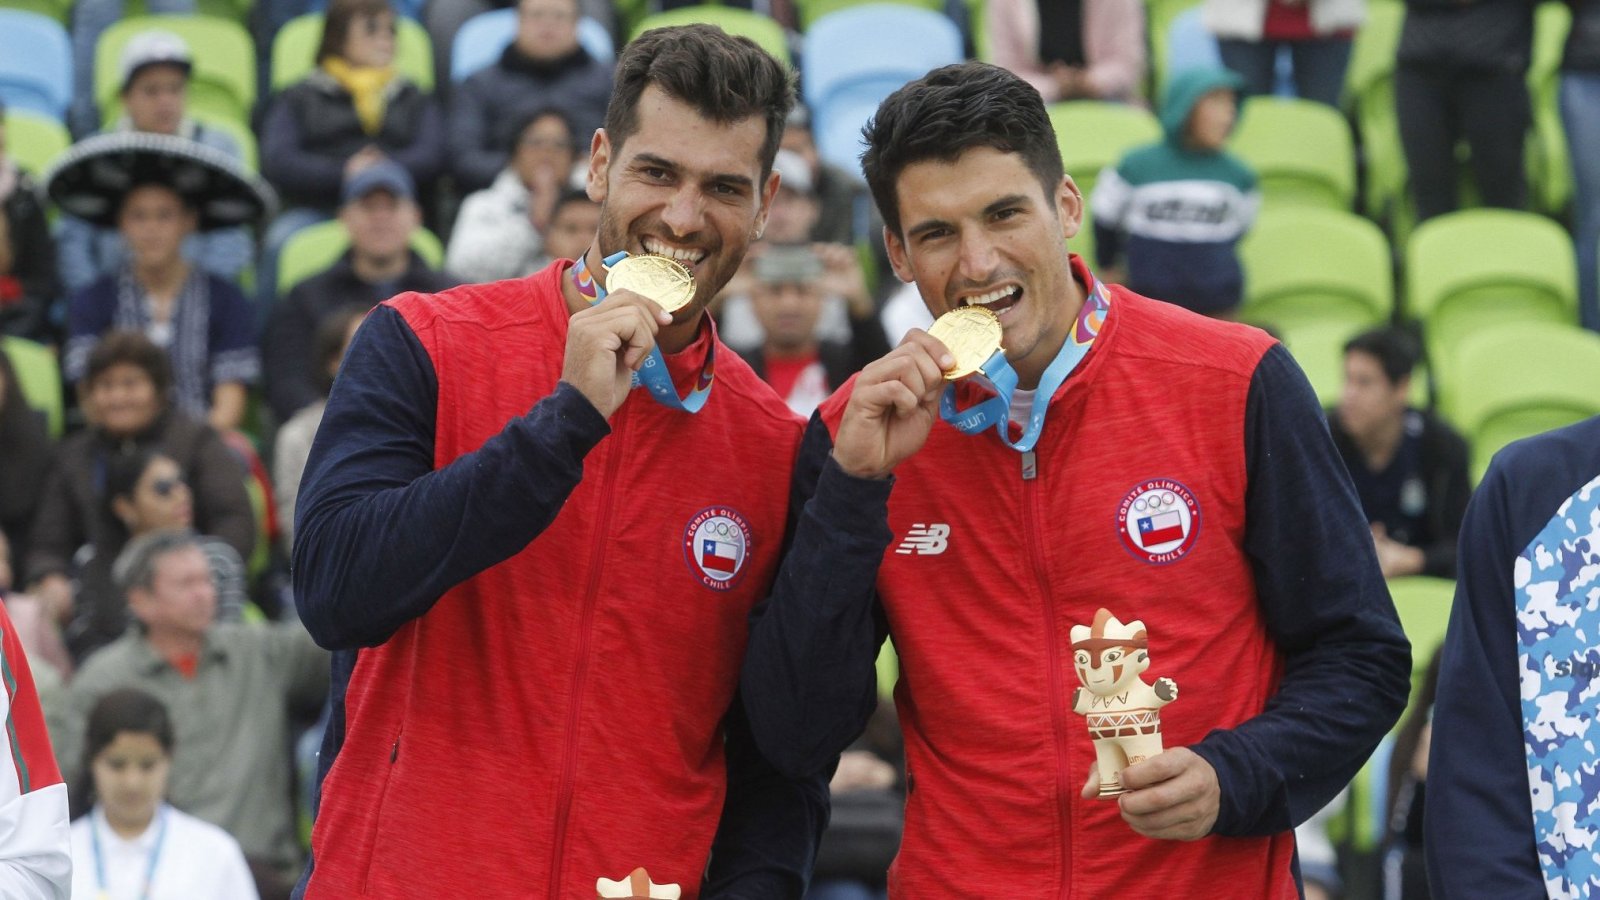 Los primos Grimalt ganaron el oro en los Panamericanos 2019